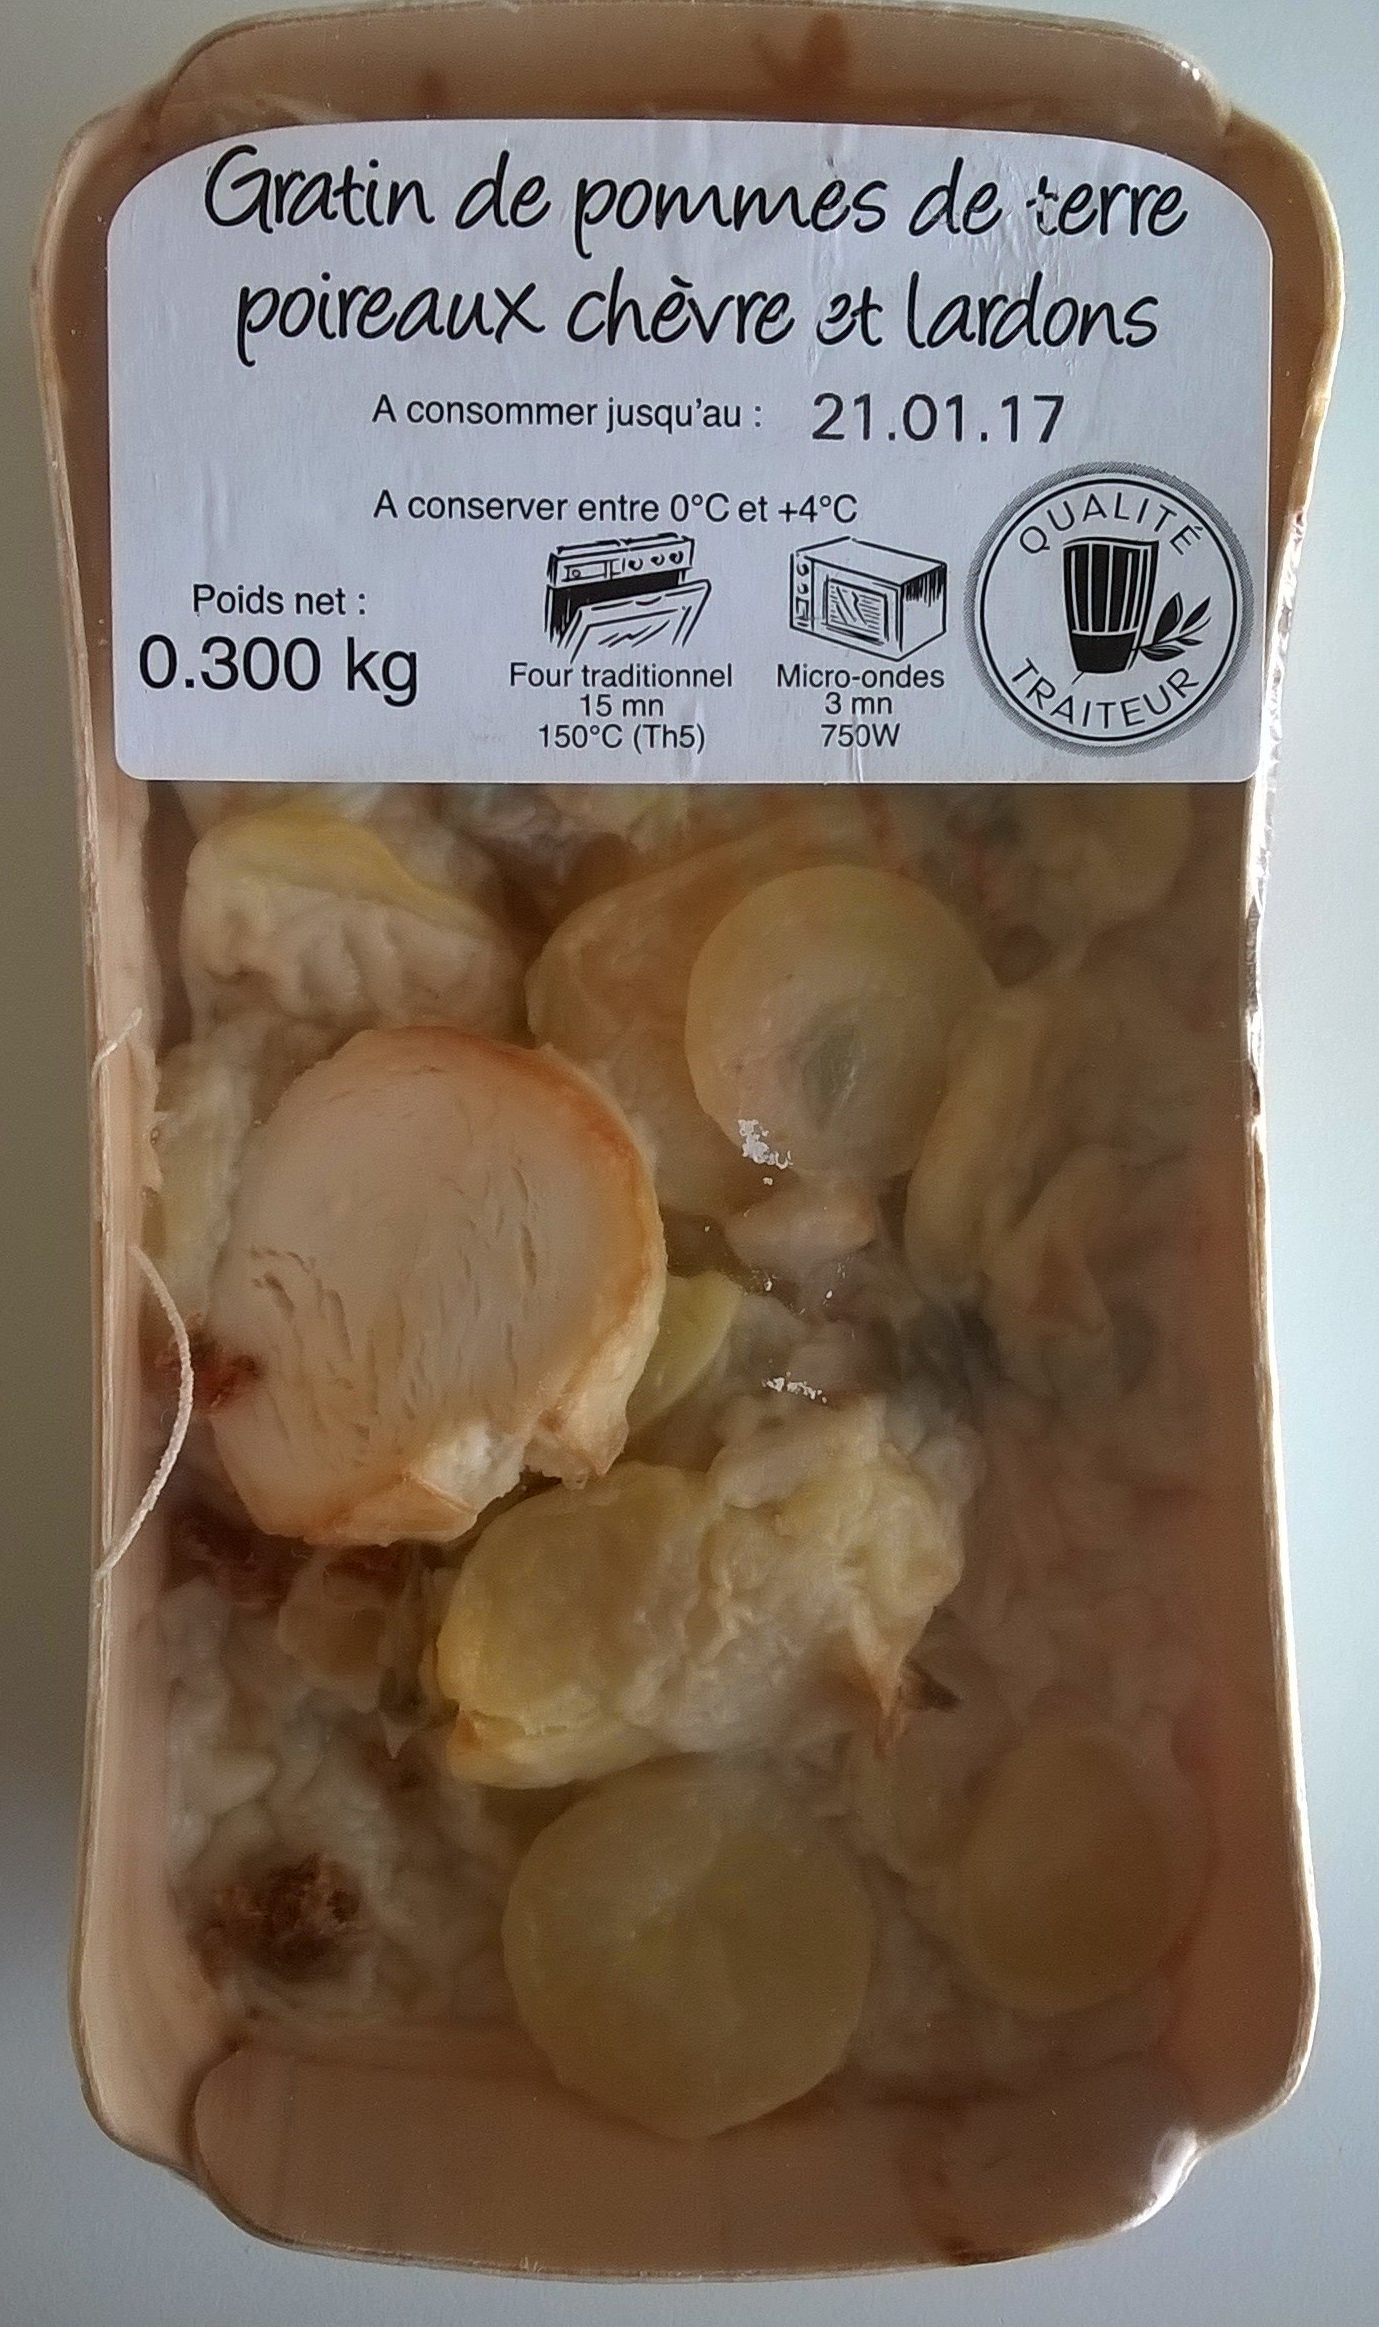 Gratin de pommes de terre poireaux chèvre et lardons - Product - fr